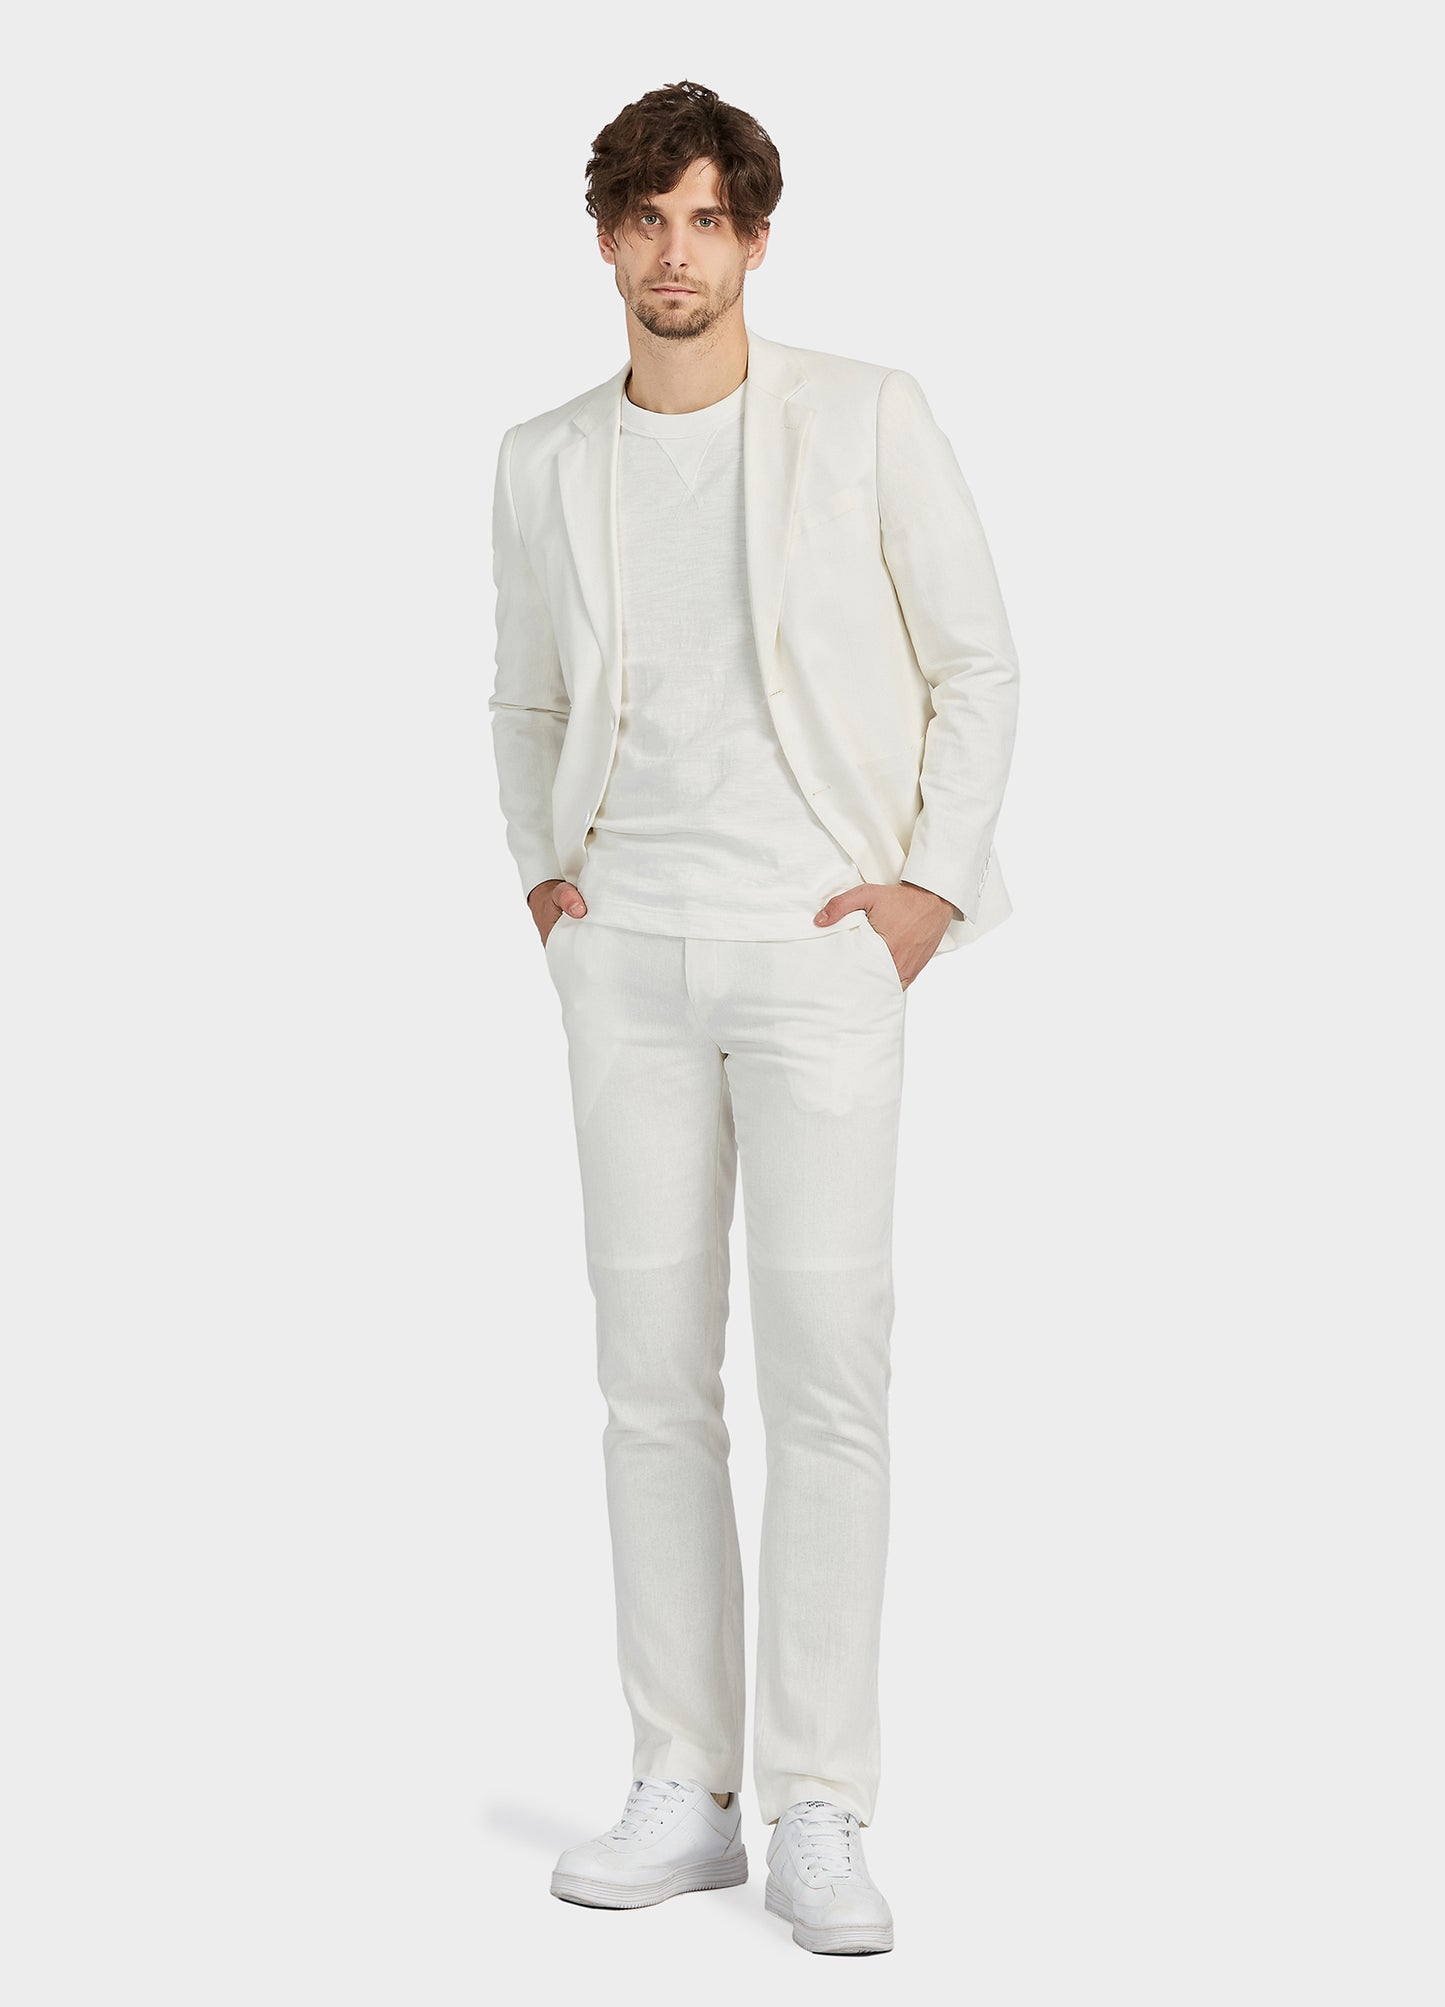 1PA1 Men's Linen Lapel Two-Button Plain Blazer Suits